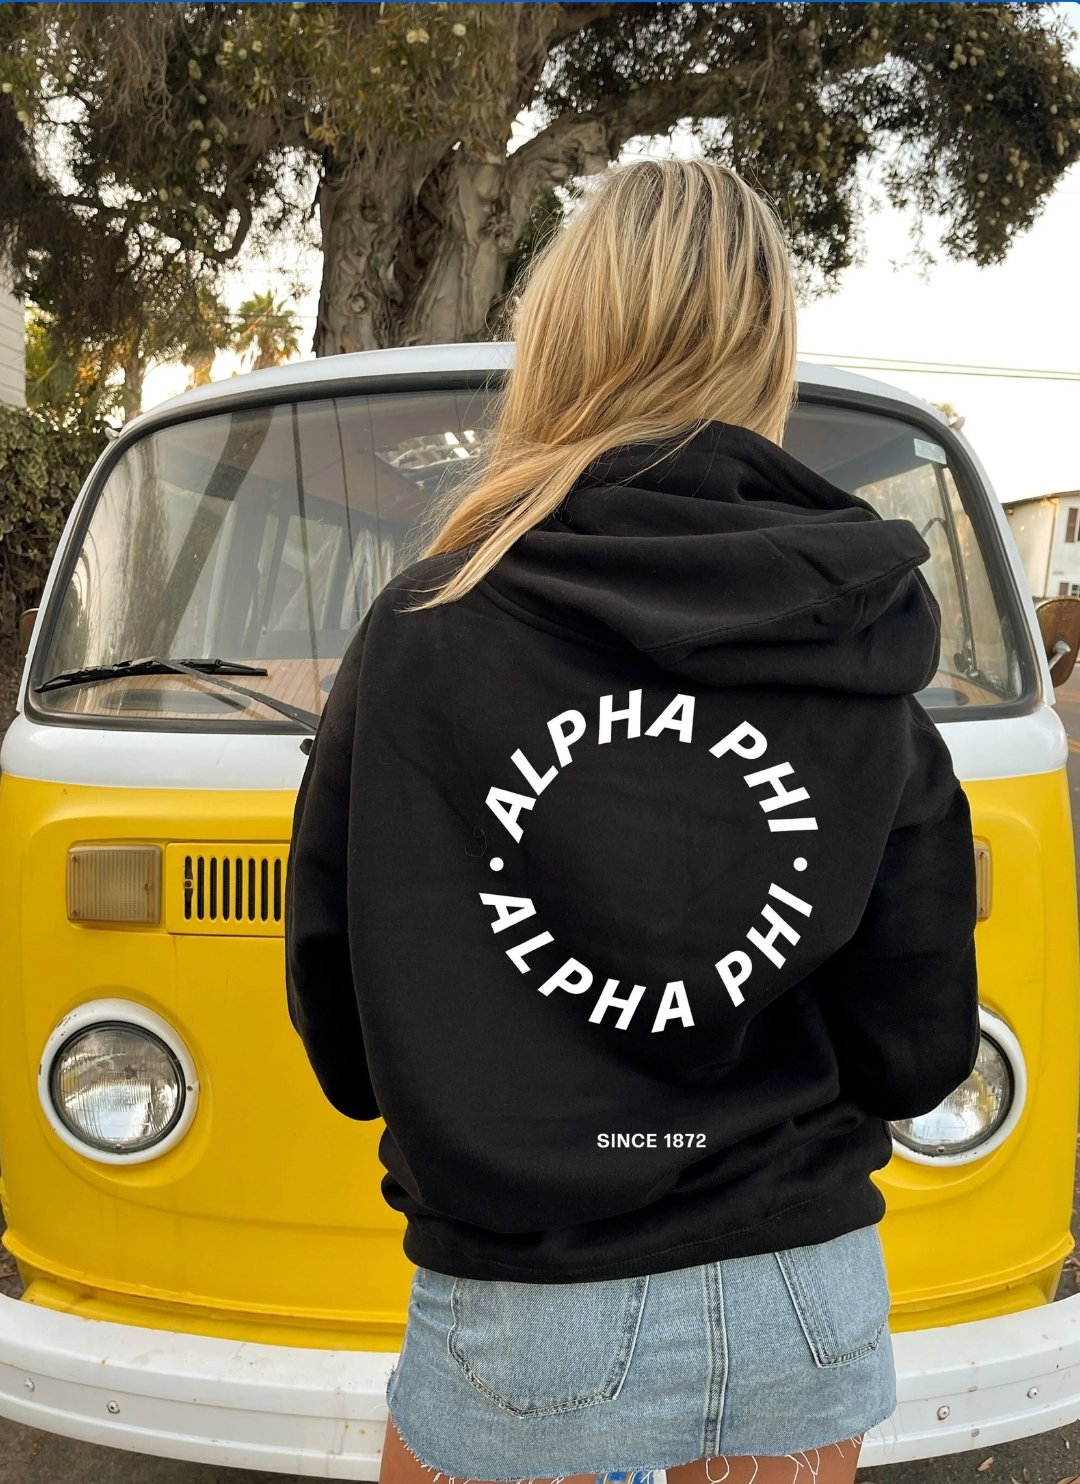 Alpha Phi / APhi Simple Trendy Cute Circle Sorority Hoodie Sweatshirt Design Black